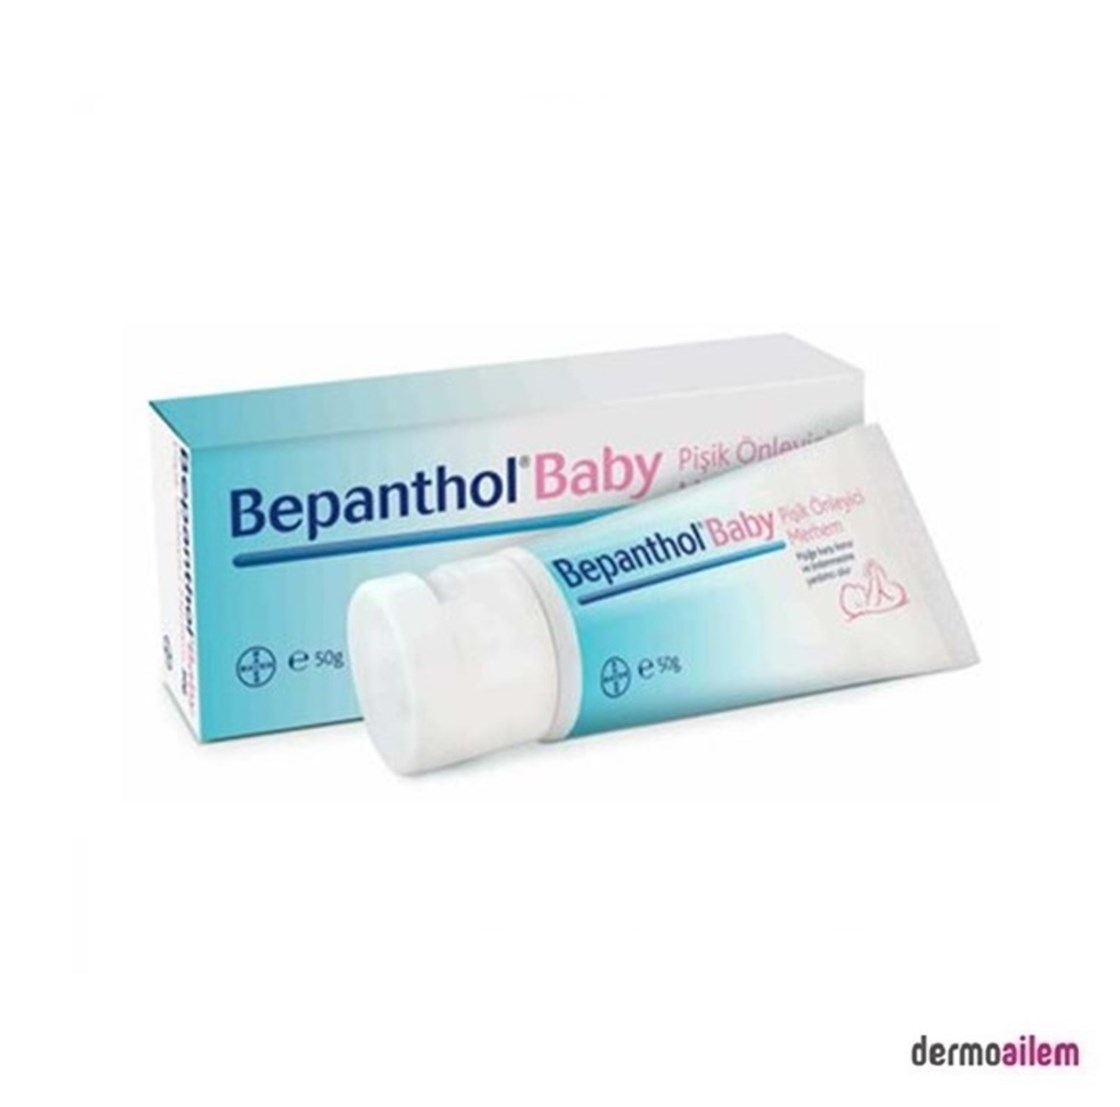 Bepanthol Baby Pişik Önleyici Merhem 50 gr Fiyatları İndirimli | Dermoailem .com